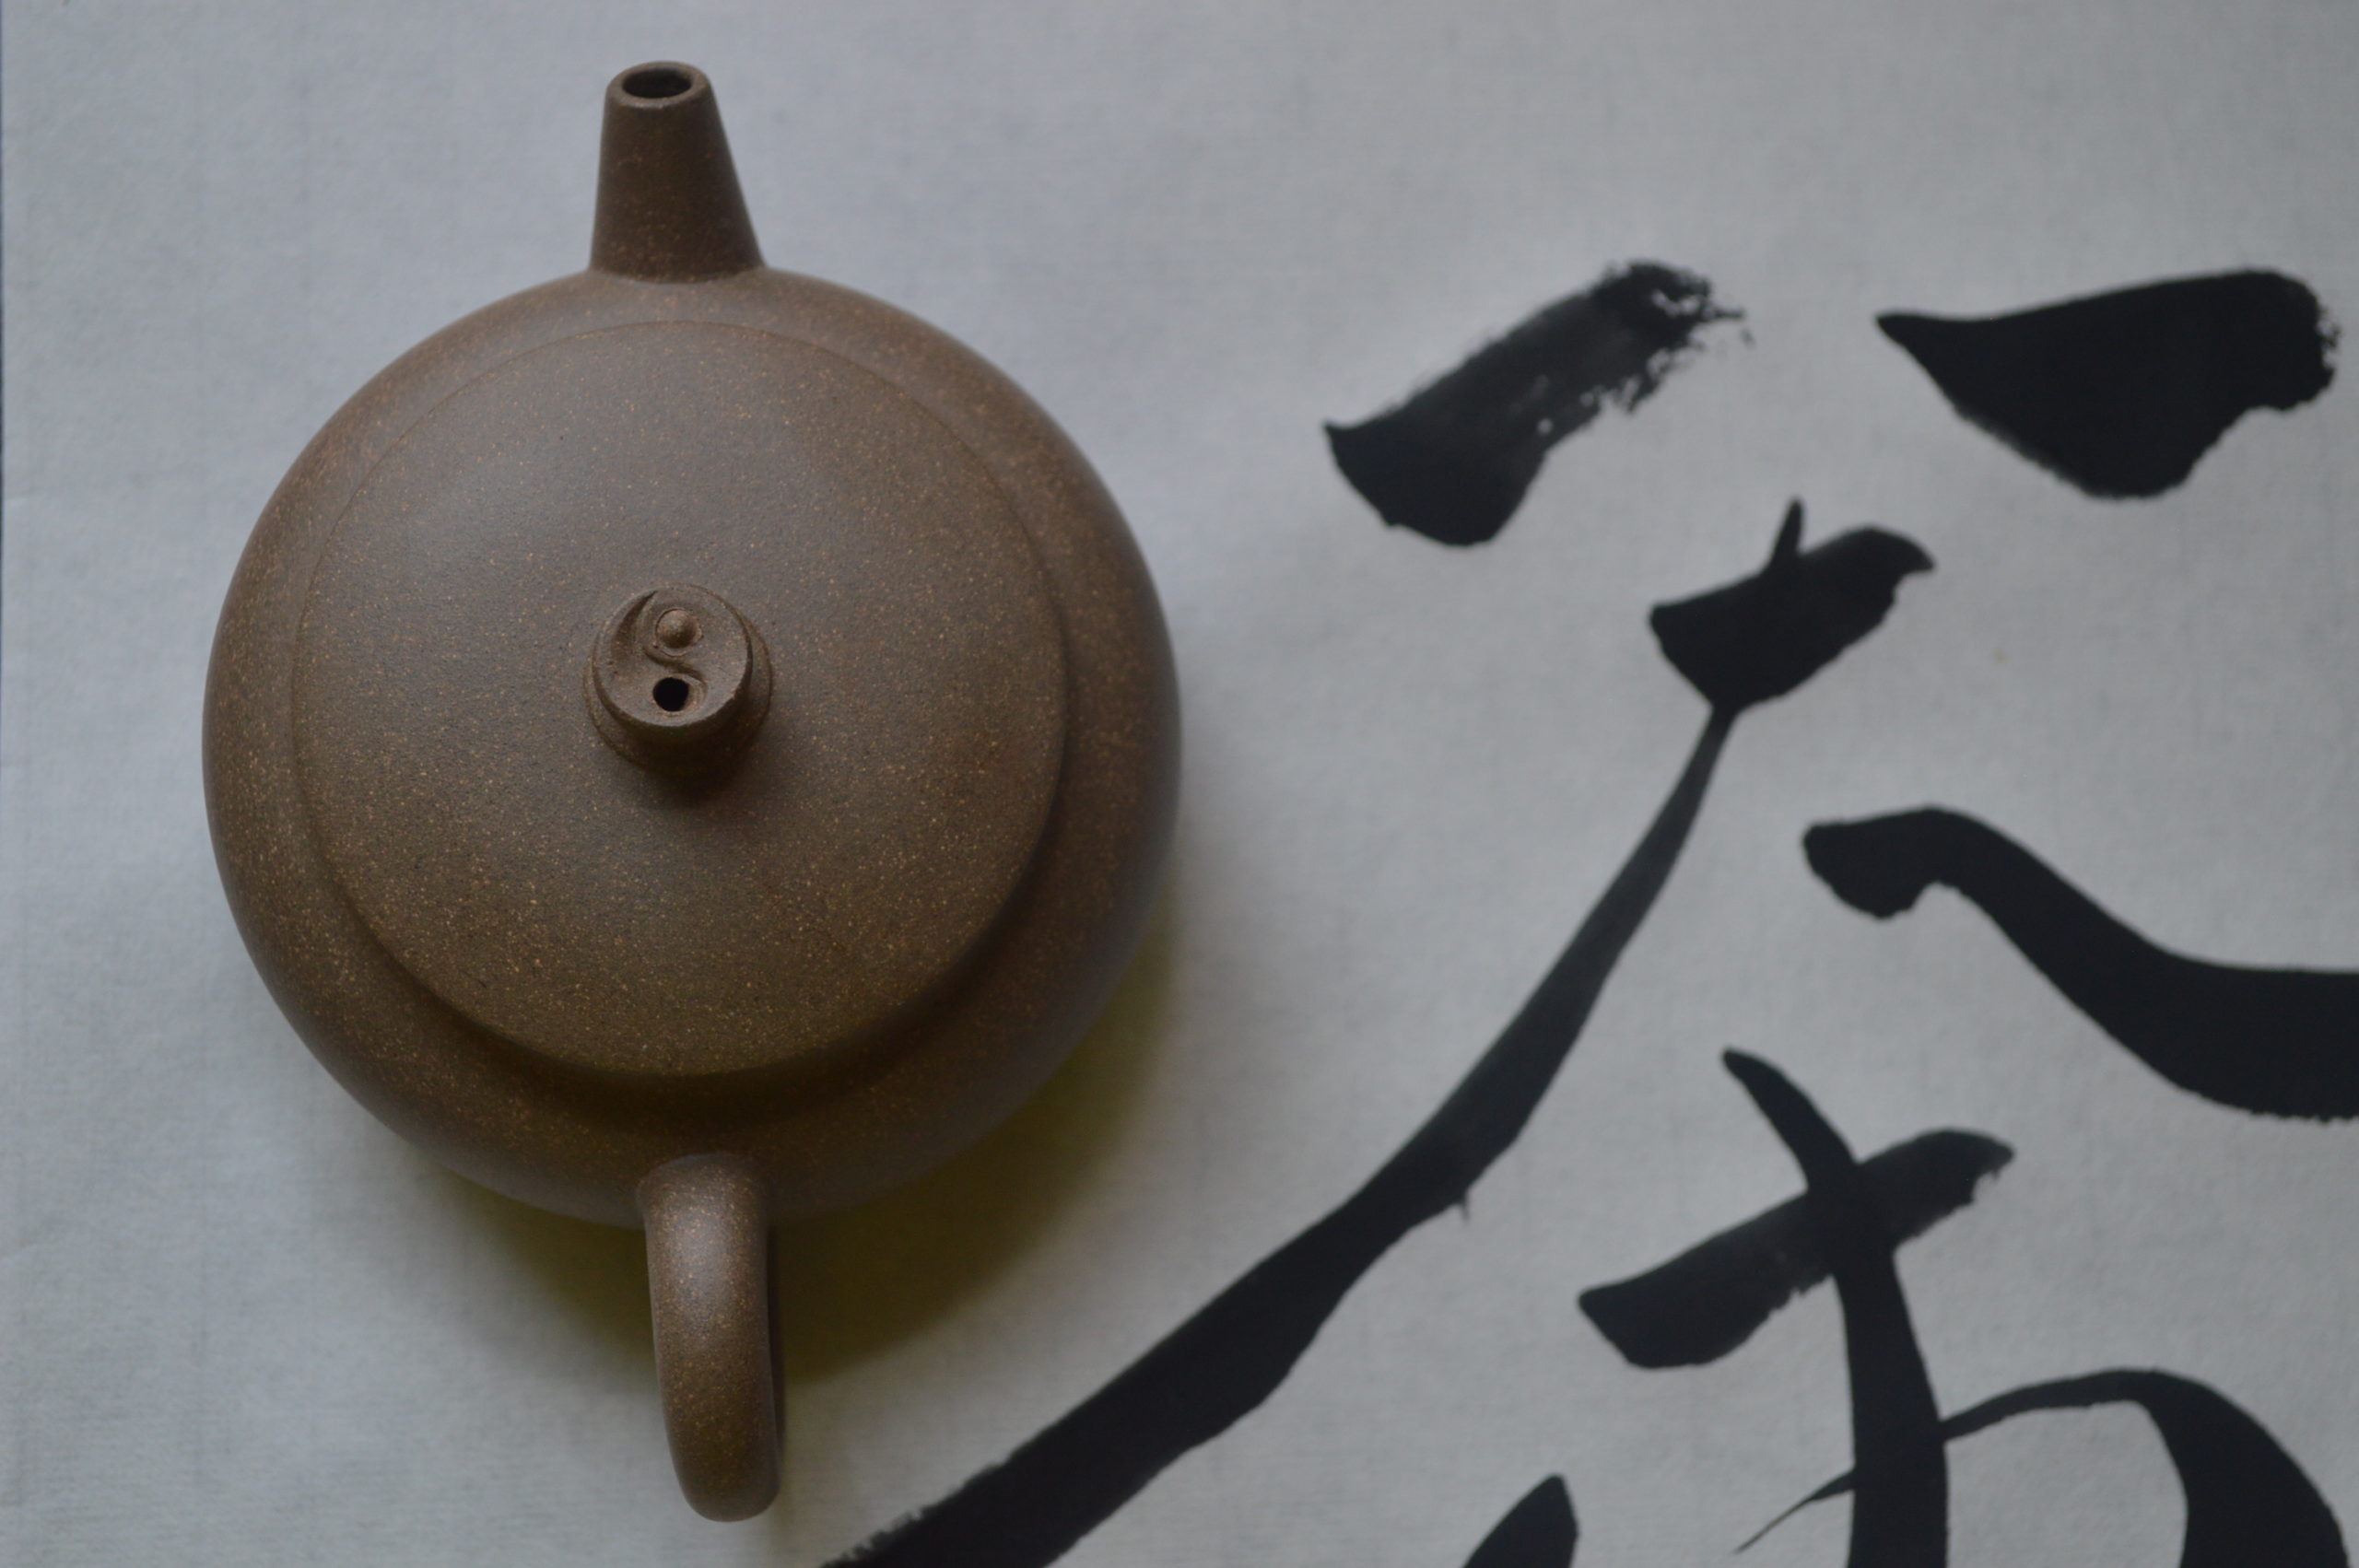 Chinese Handmade Yixing Ceramic Teapot Zisha purple clay Zini Chicken Teapot 